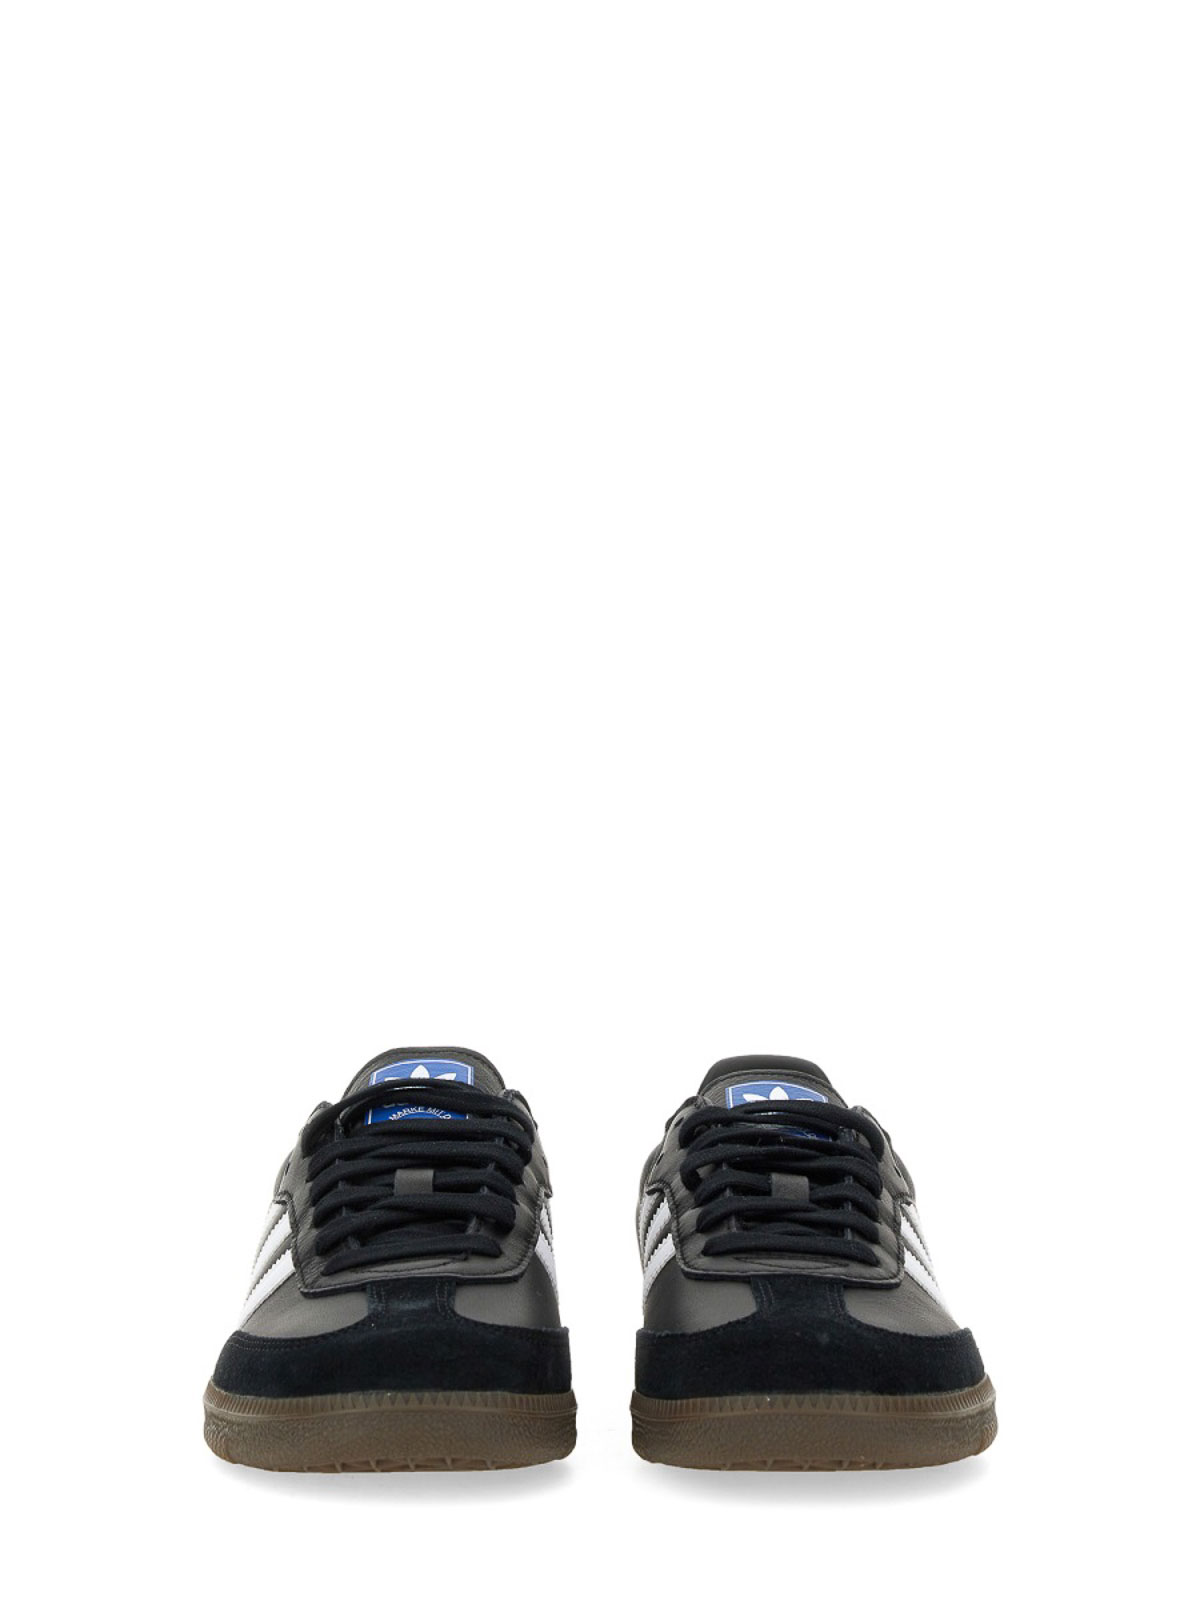 Shop Adidas Originals Zapatillas - Samba In Black